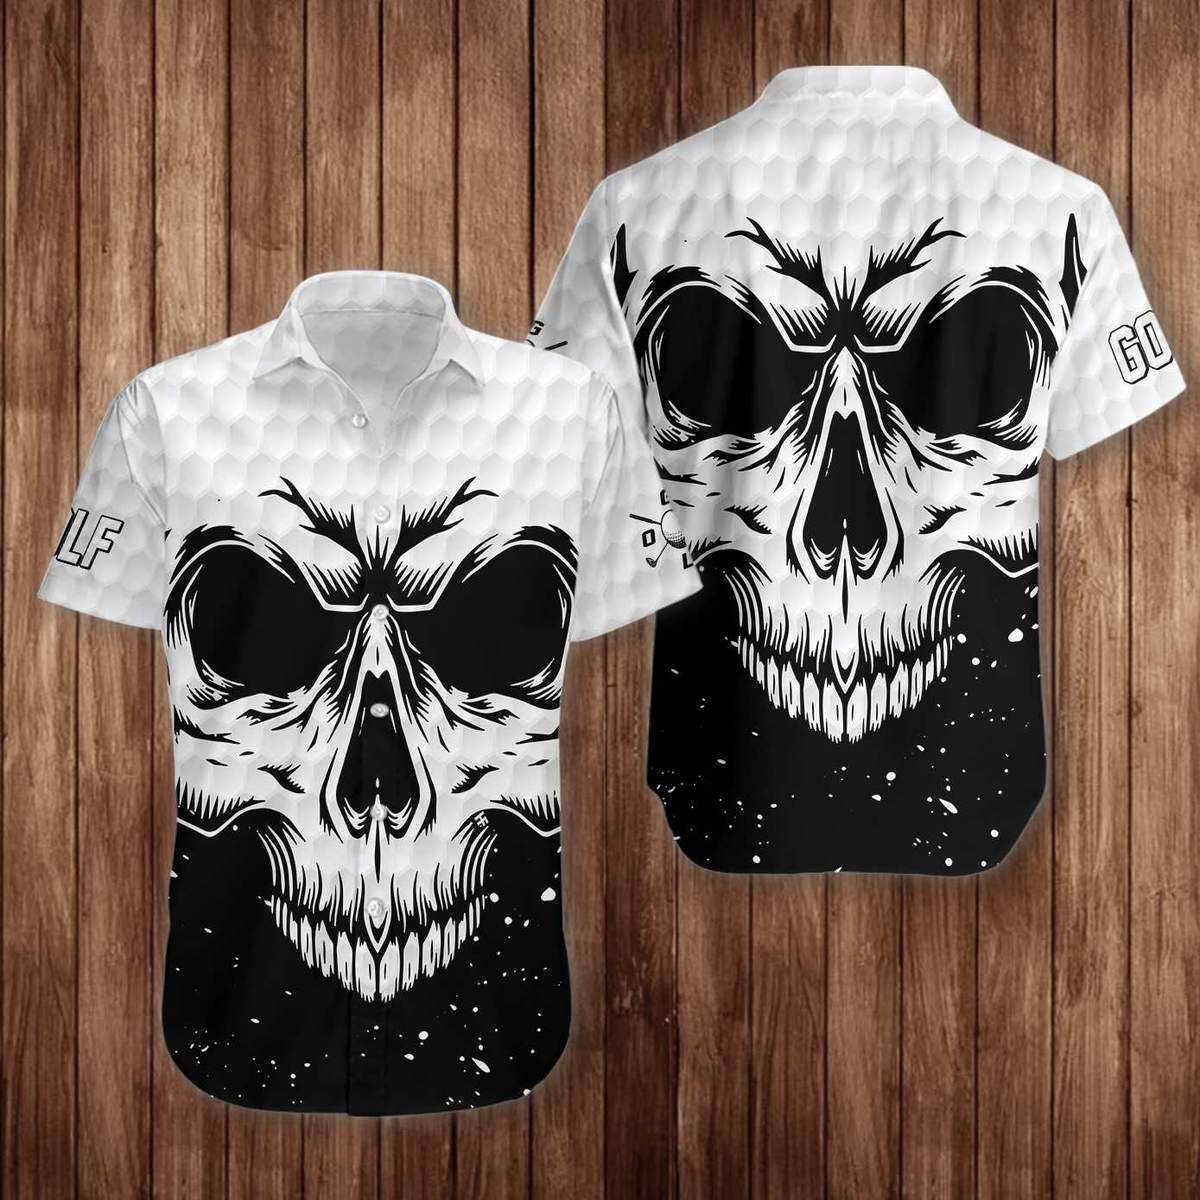 Beach Shirt Get Here White Skull Golf Unisex Hawaiian Shirt